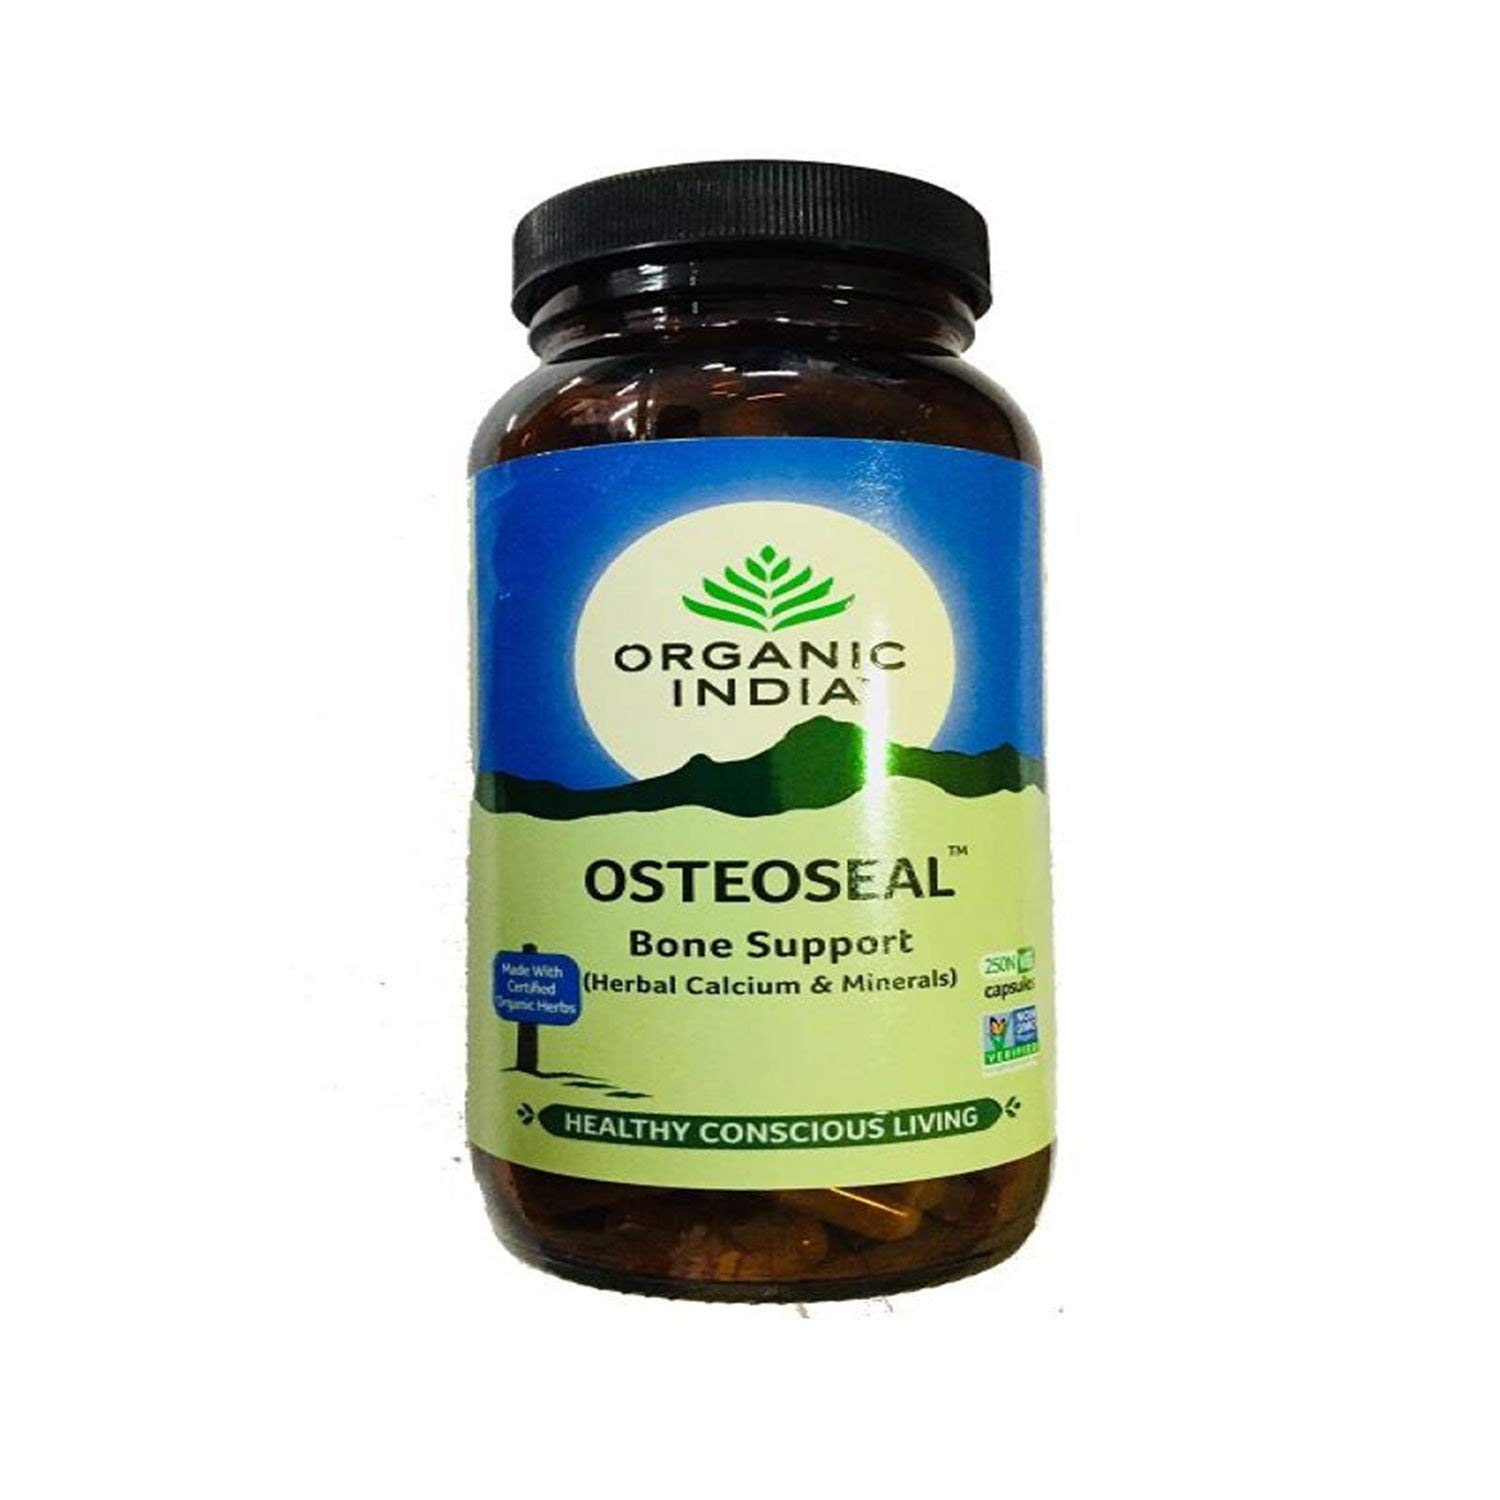 Organic India Osteoseal